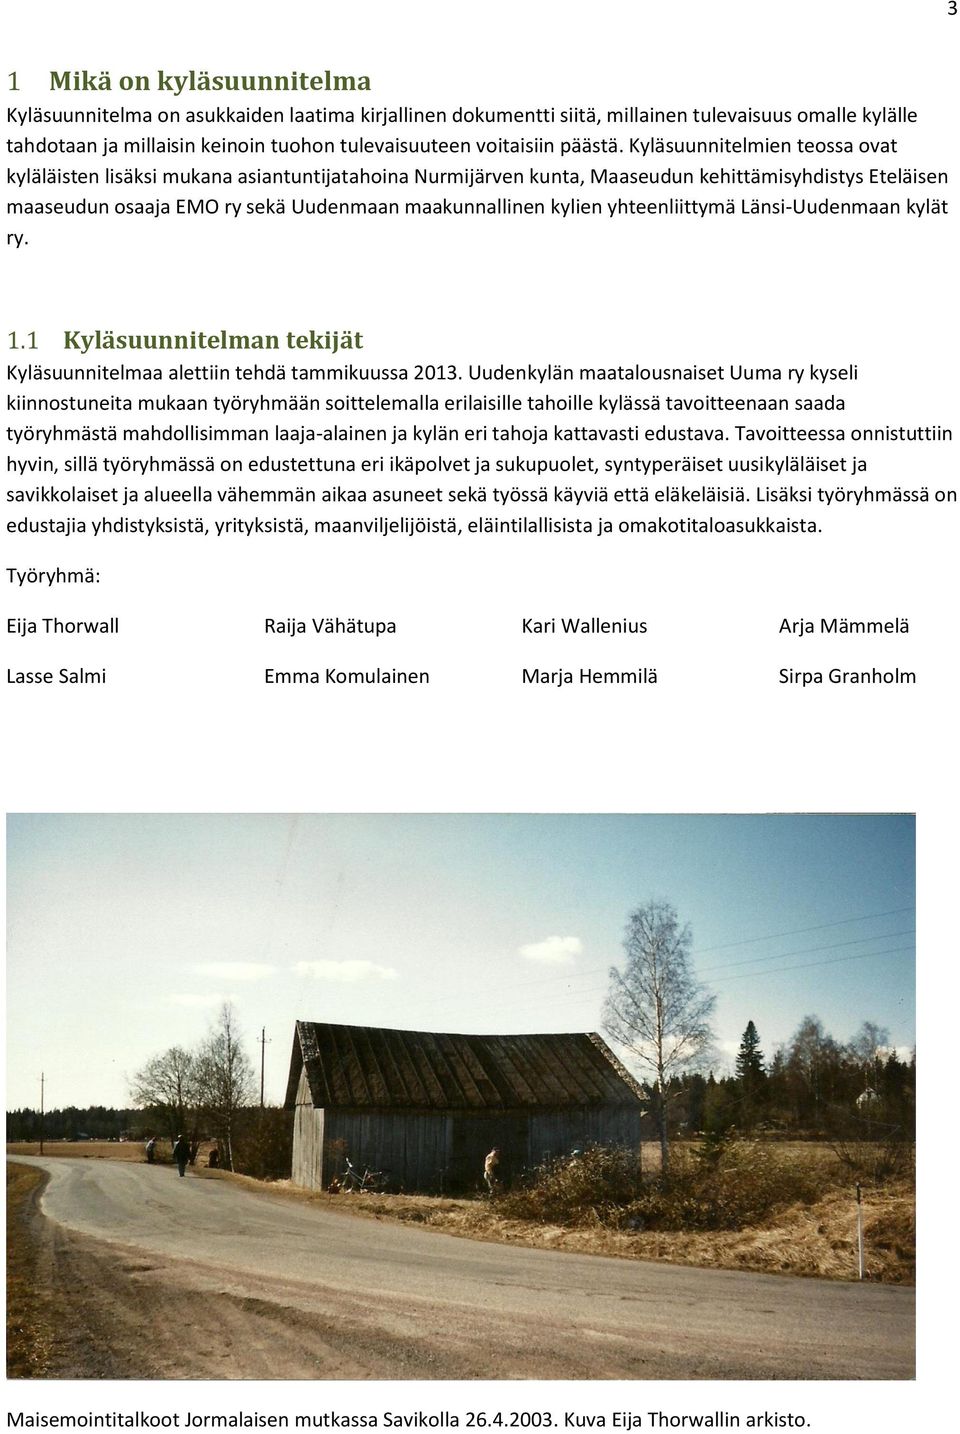 Kyläsuunnitelmien teossa ovat kyläläisten lisäksi mukana asiantuntijatahoina Nurmijärven kunta, Maaseudun kehittämisyhdistys Eteläisen maaseudun osaaja EMO ry sekä Uudenmaan maakunnallinen kylien